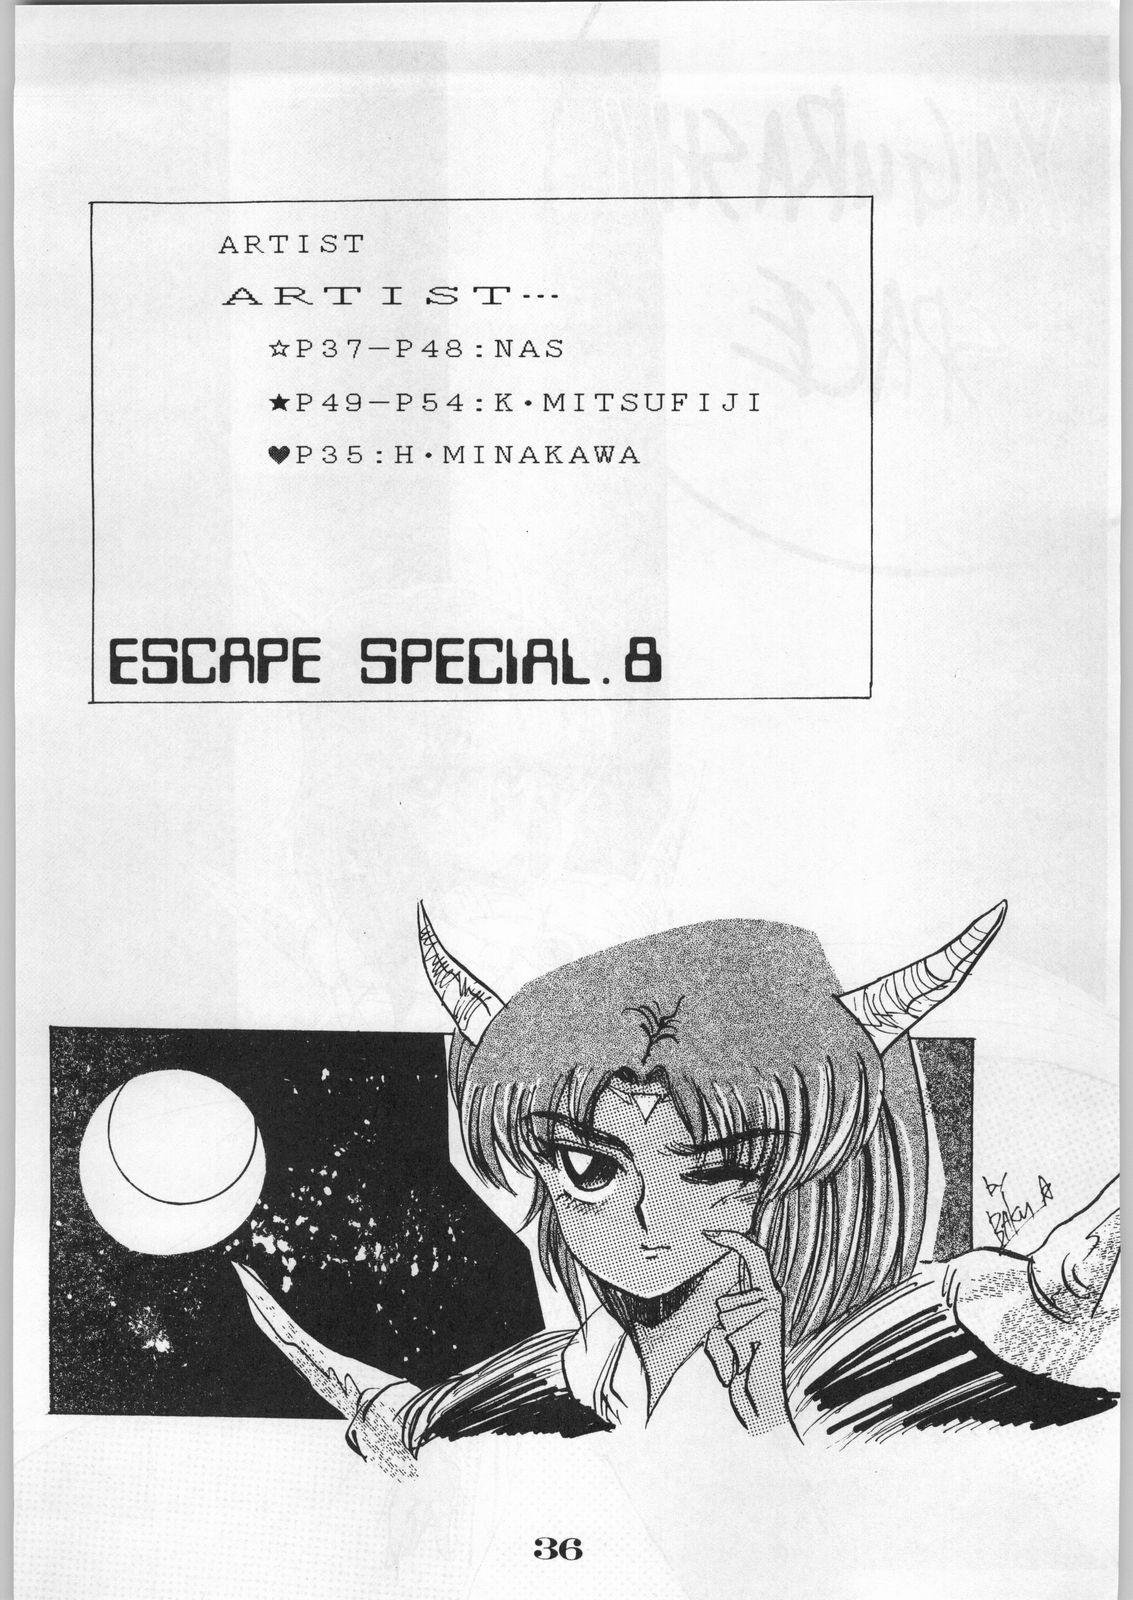 Escape Special 8 - Yosoashi 36